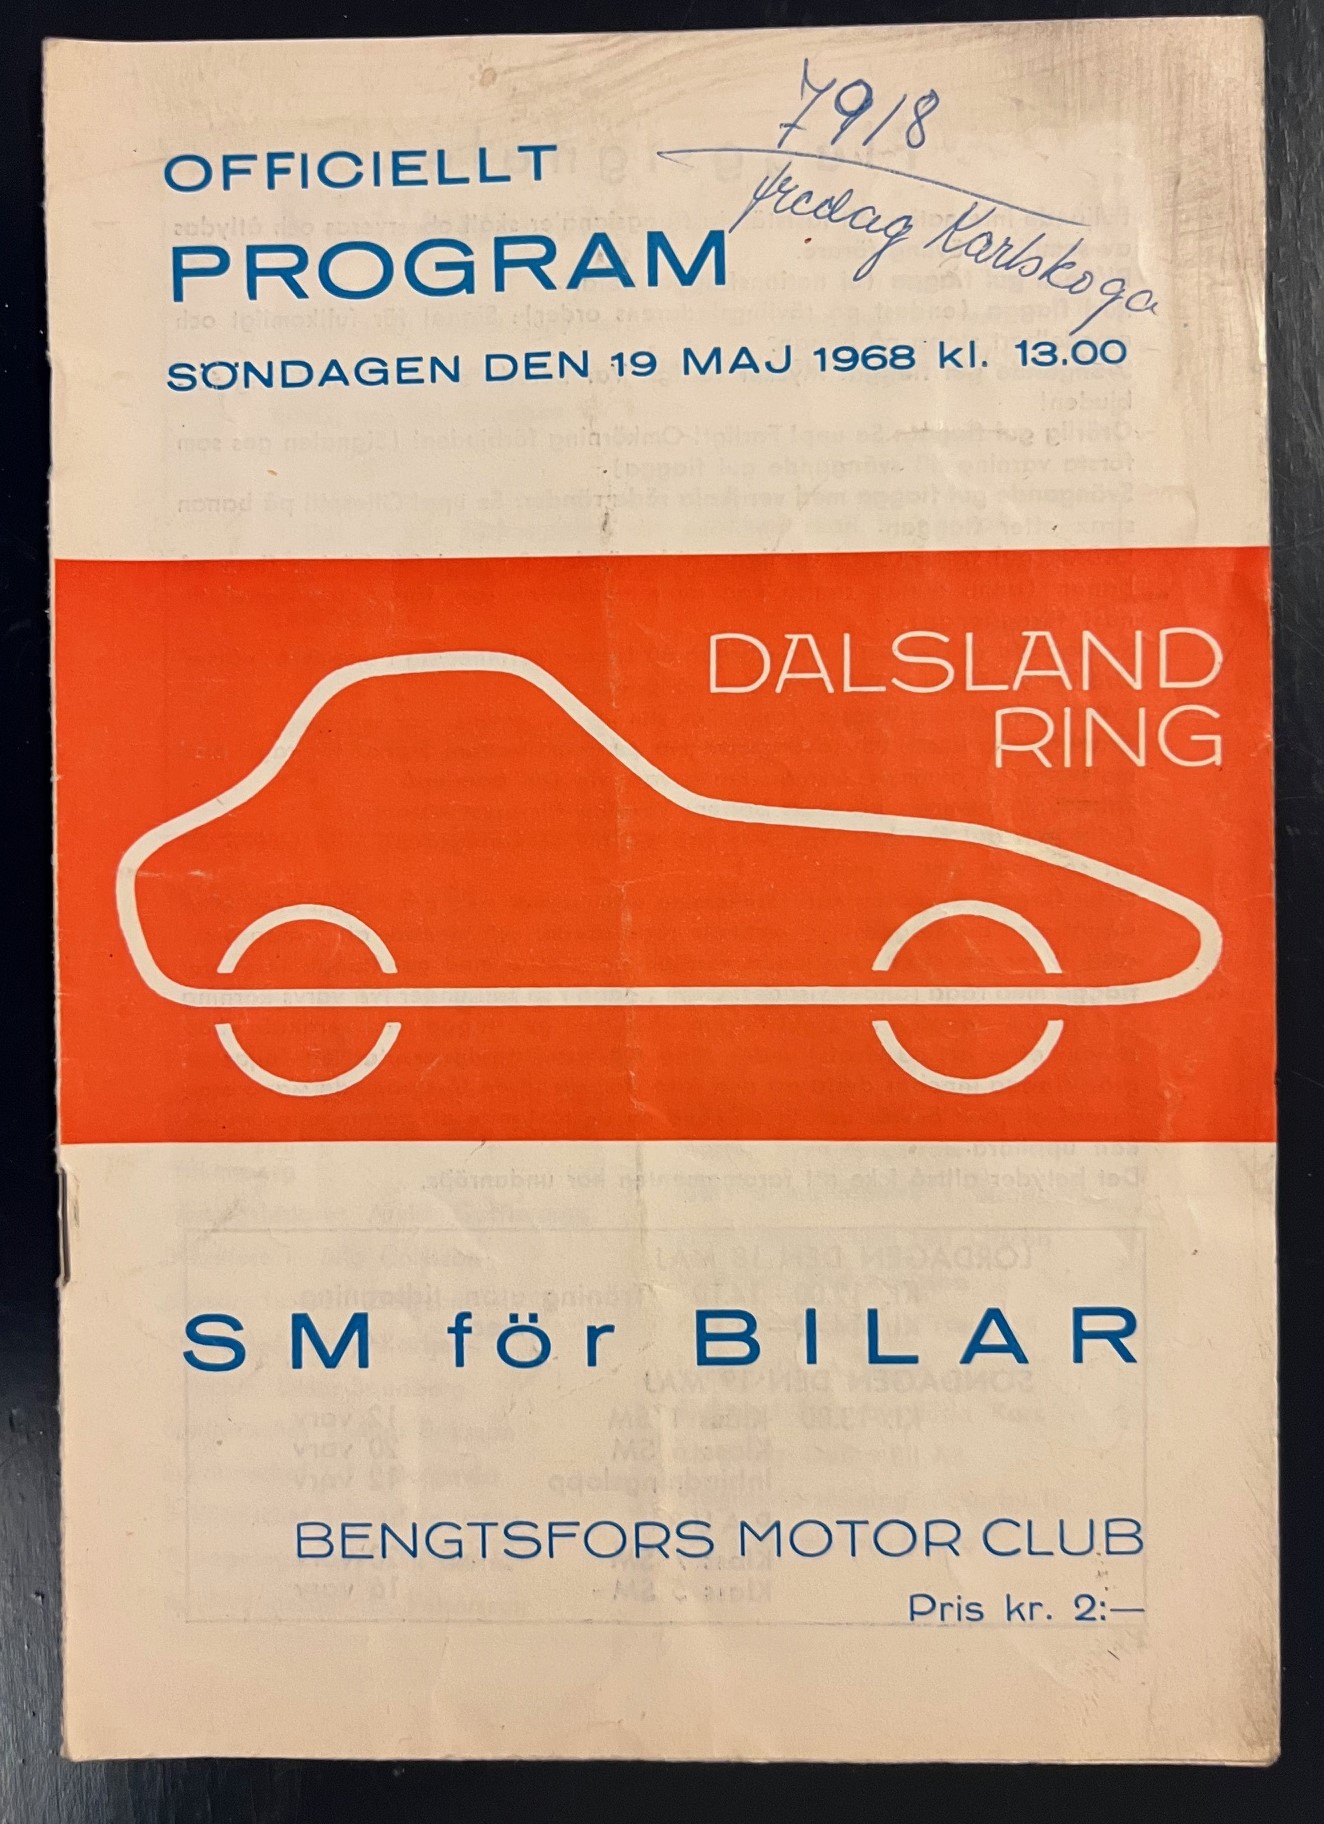 Dalsland Ring - program 1968 - svårfångat numera!